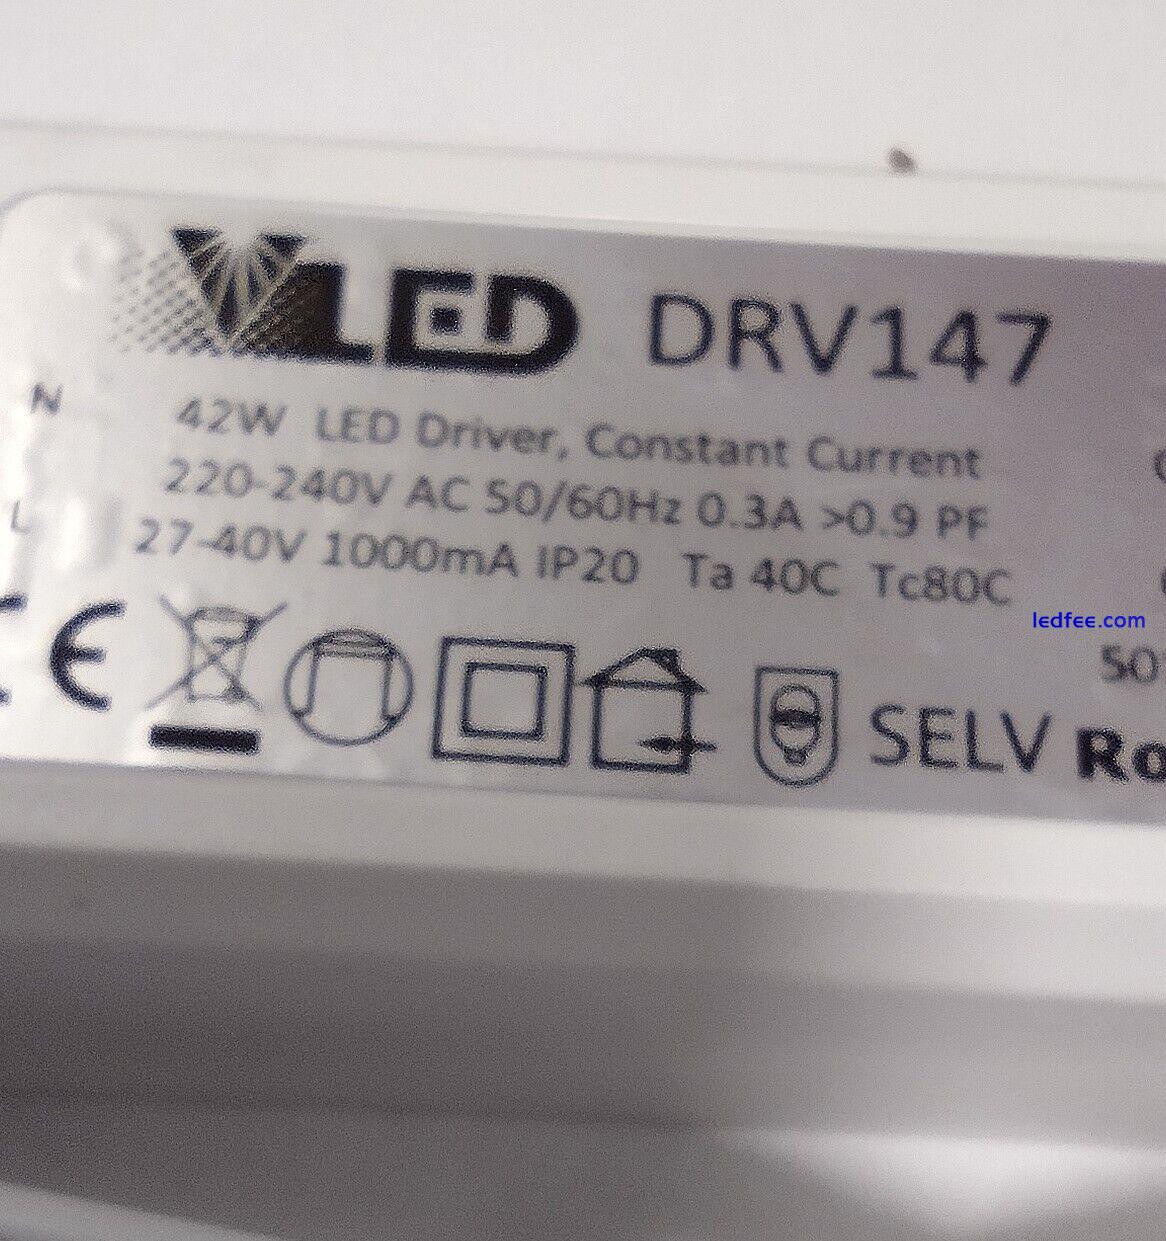 VENTURE LIGHTING DRV147 42W LED DRIVER 2 